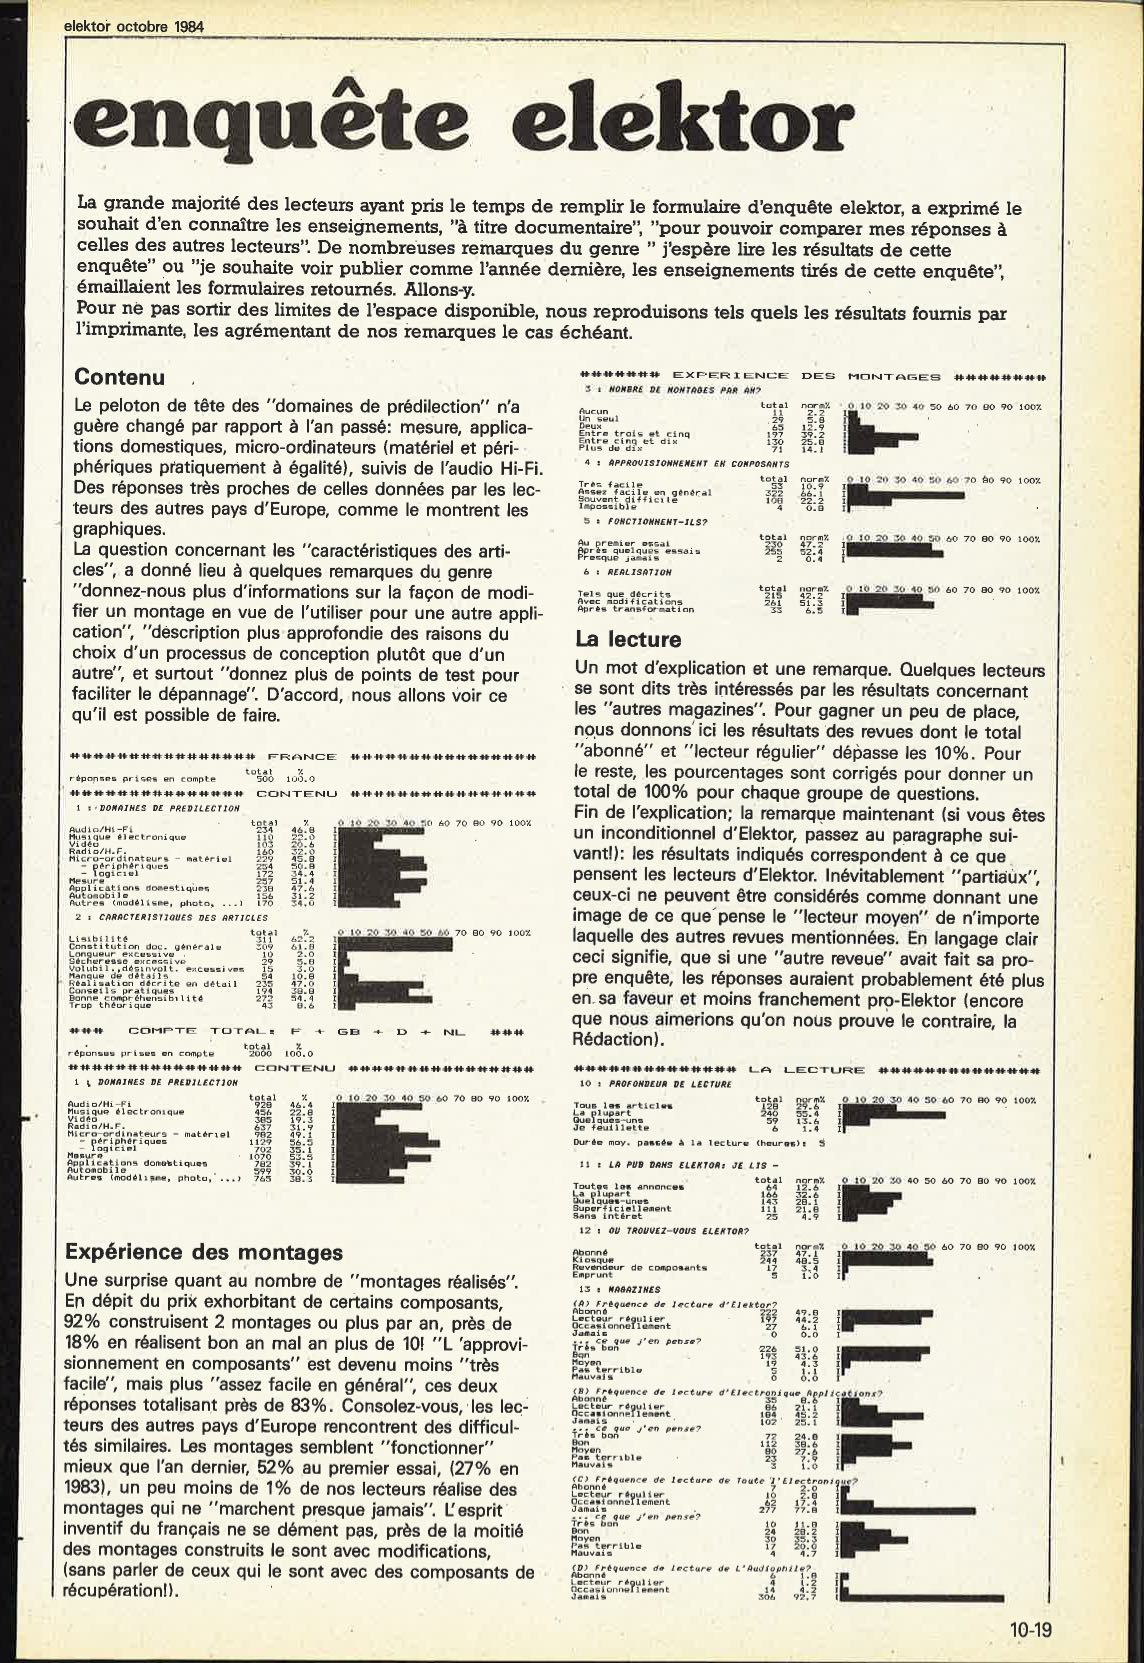 enquête elektor 1984